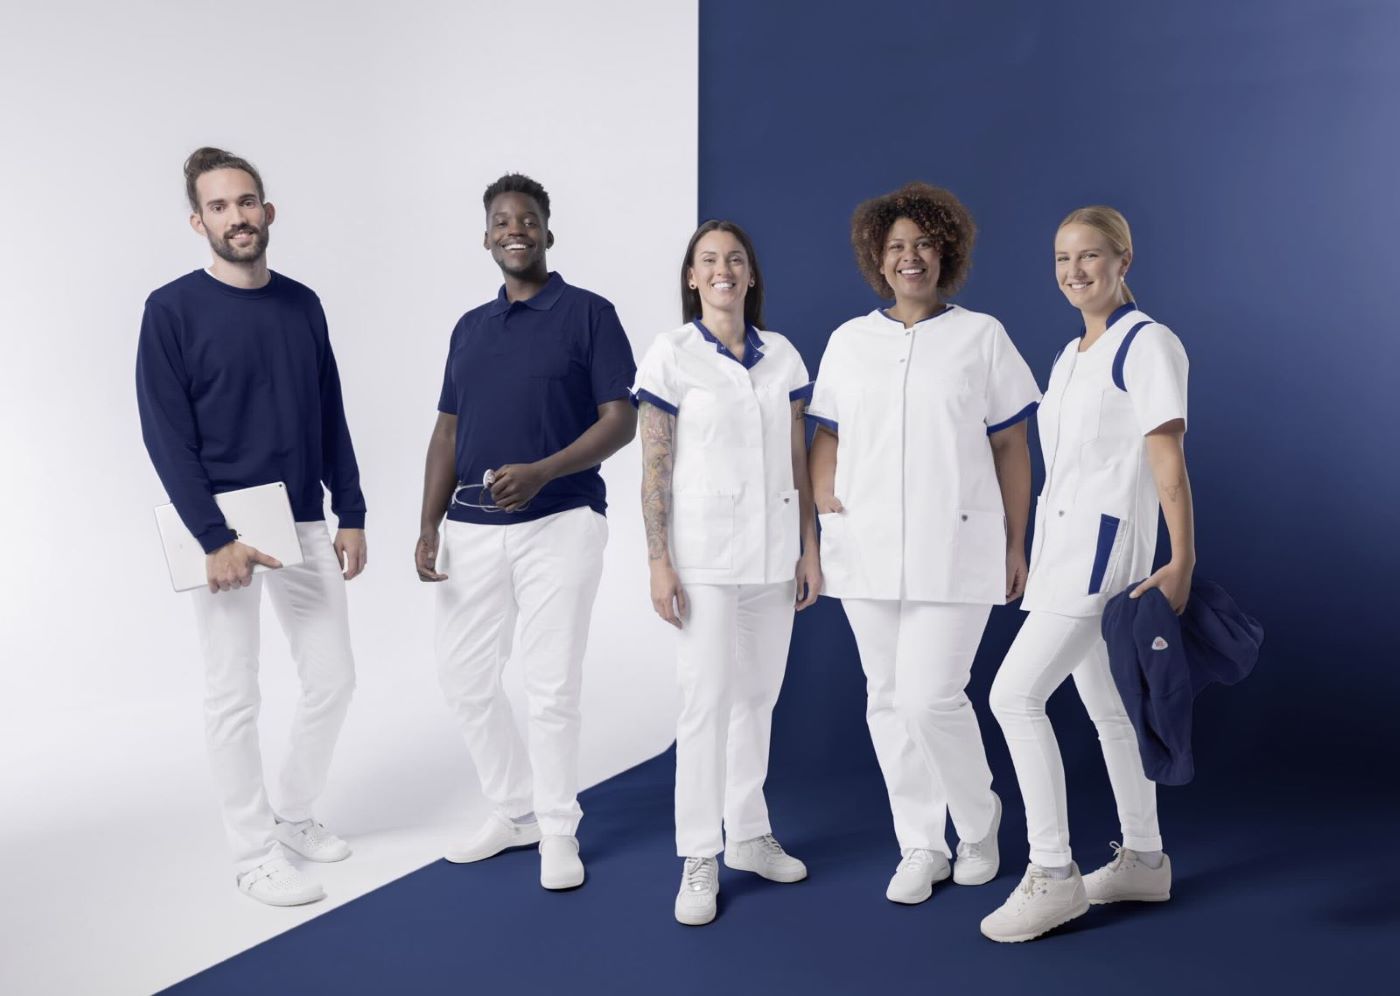 Medizinisches Personal in blau-weißer Berufskleidung.